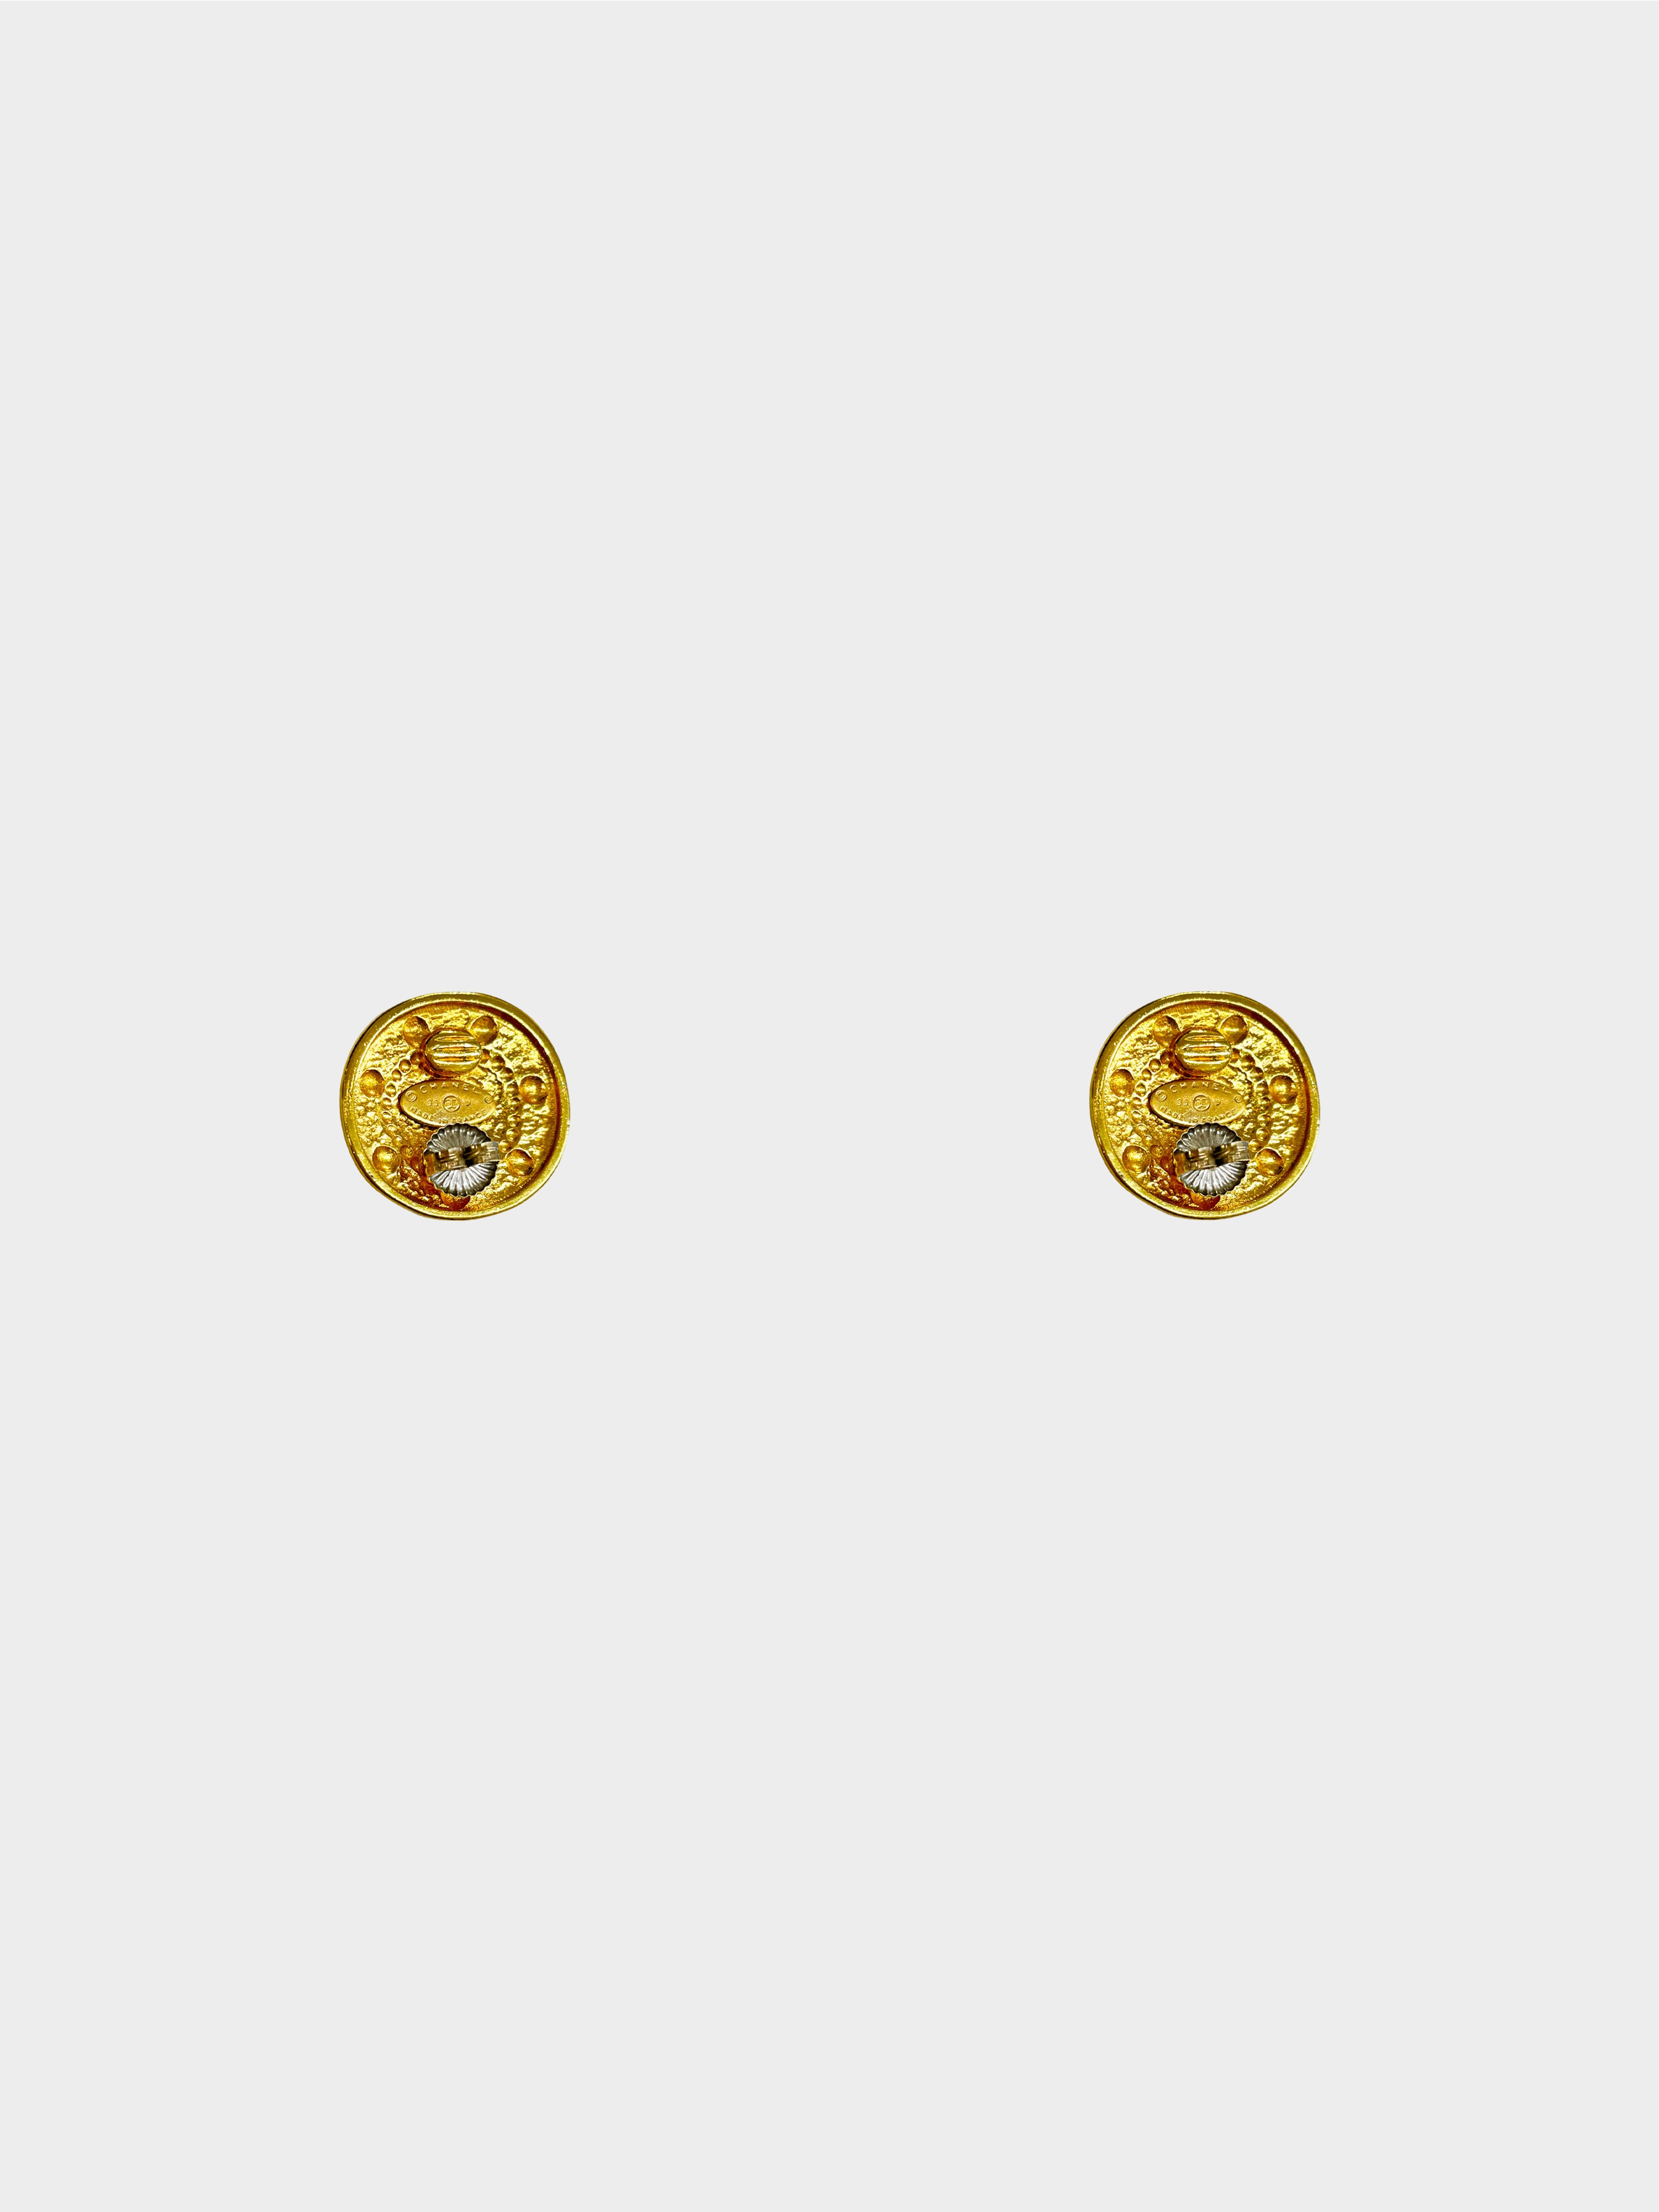 Chanel Spring 1995 Gold Medallion CC Earrings